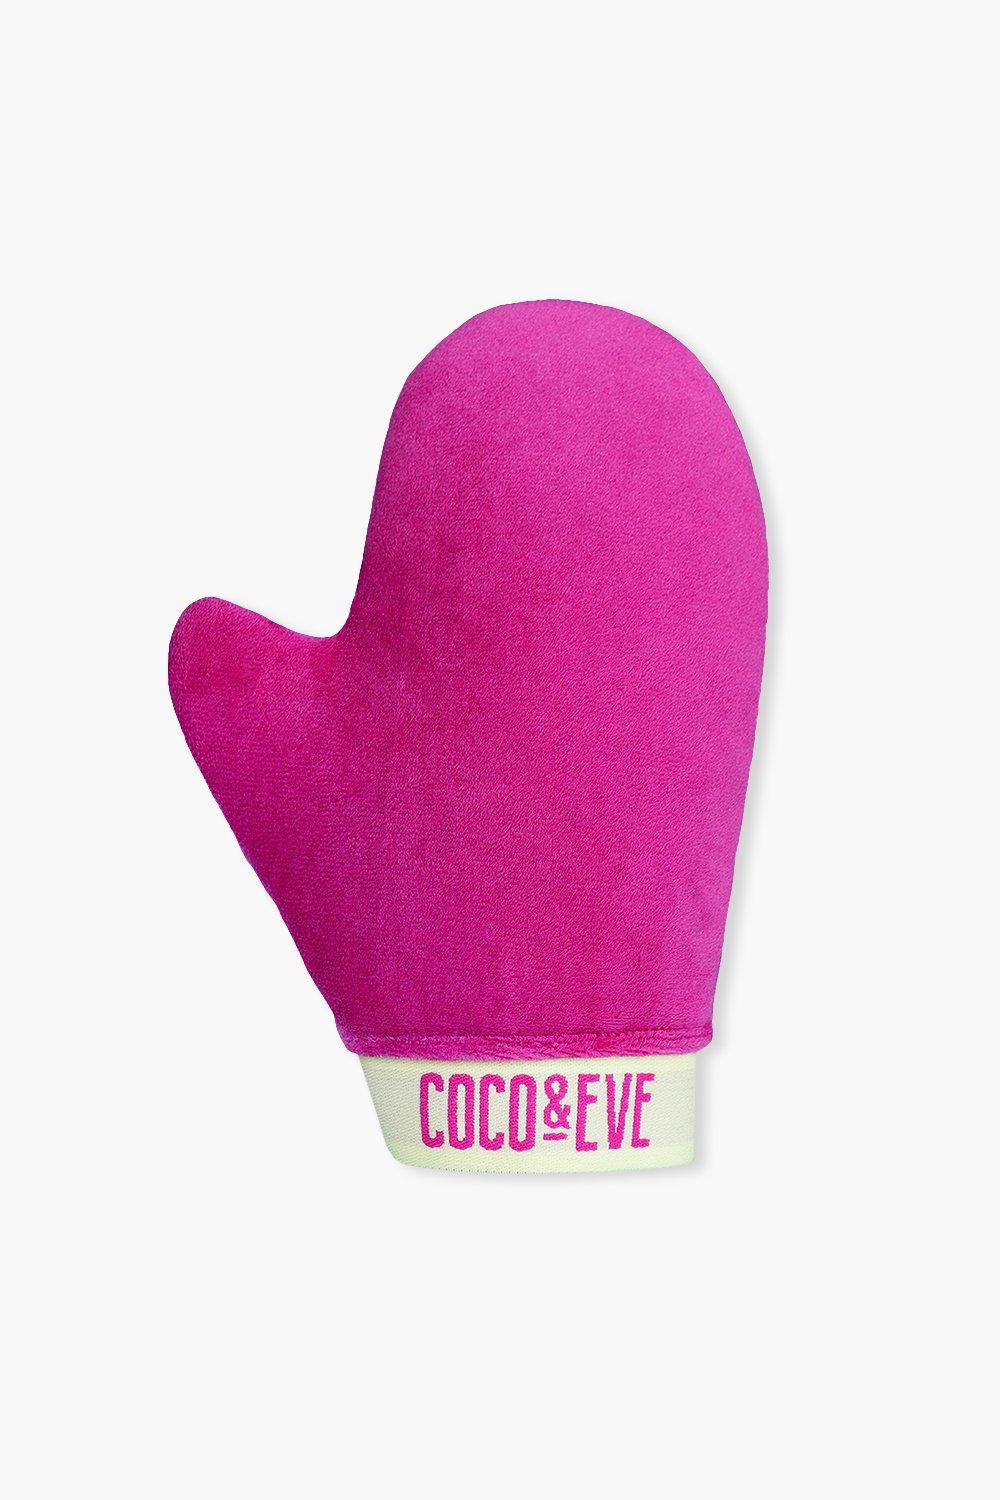 Coco & Eve Sunny Honey Soft Velvet Zelfbruiningswant, Pink